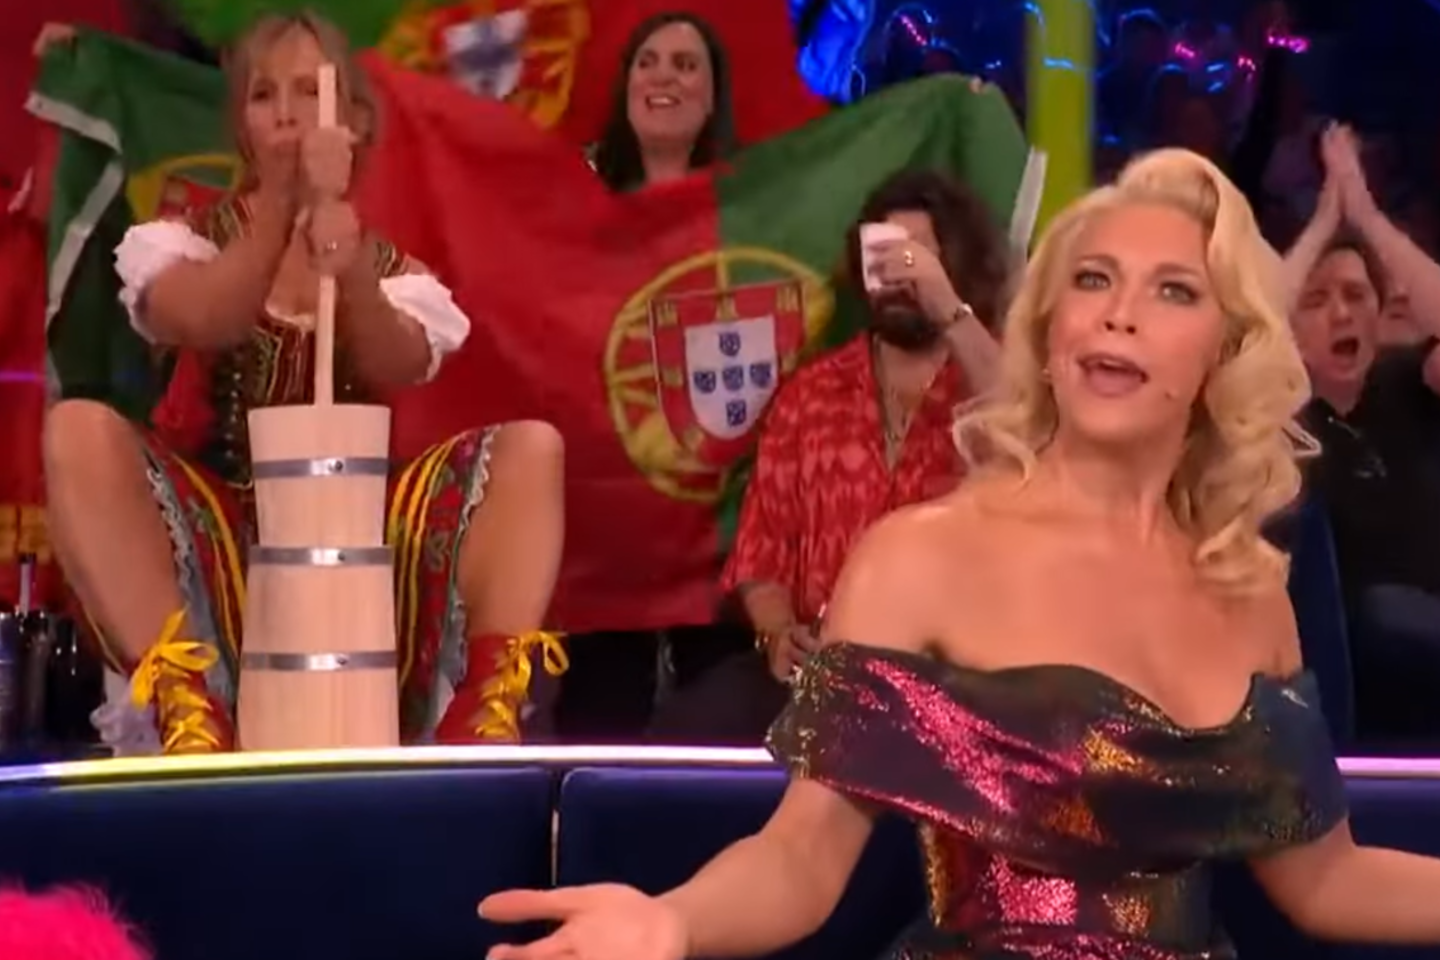 „Eurovizijoje“ pasirodžiusi aktorė, laidų vedėja bei komikė Mel Giedroyc sugebėjo pavogti dėmesį iš visų 26 konkurse dalyvaujančių šalių.<br>„Eurovizijos“ transliacijos stop kadrai.